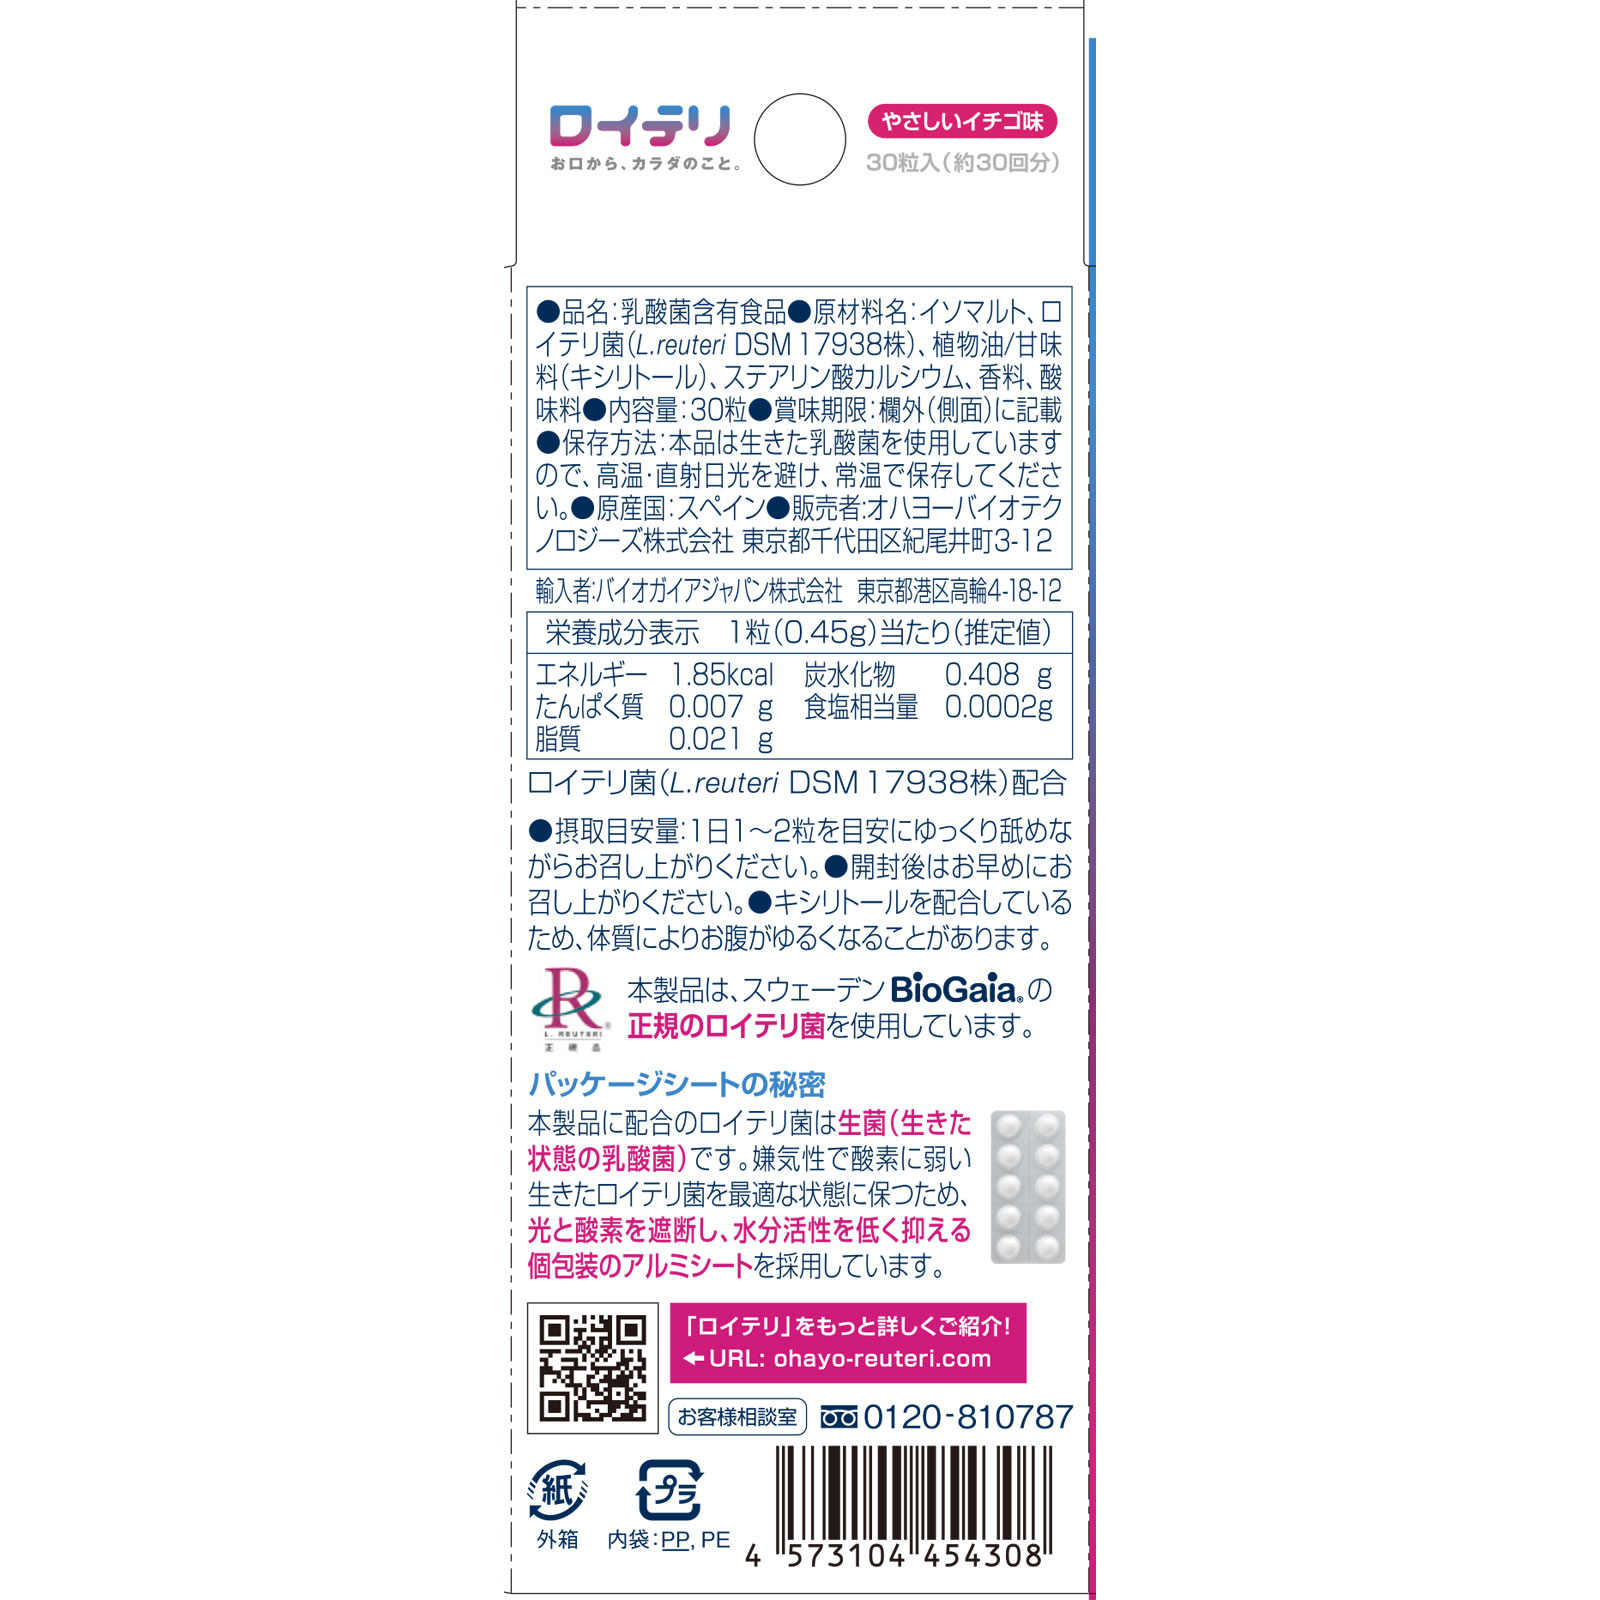 ロイテリ 乳酸菌サプリメント Self Guard 30粒入 - 健康用品